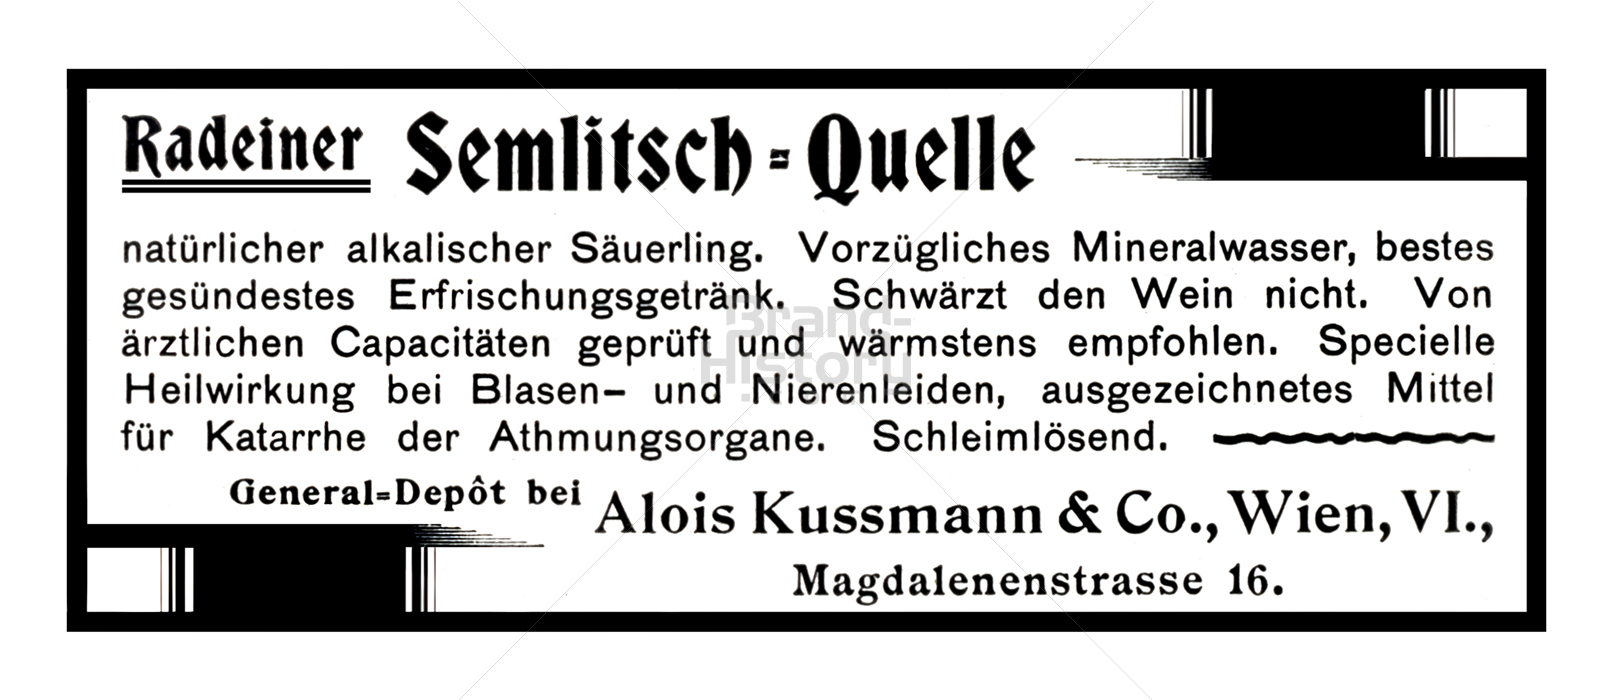 Alois Kussmann & Co., Wien